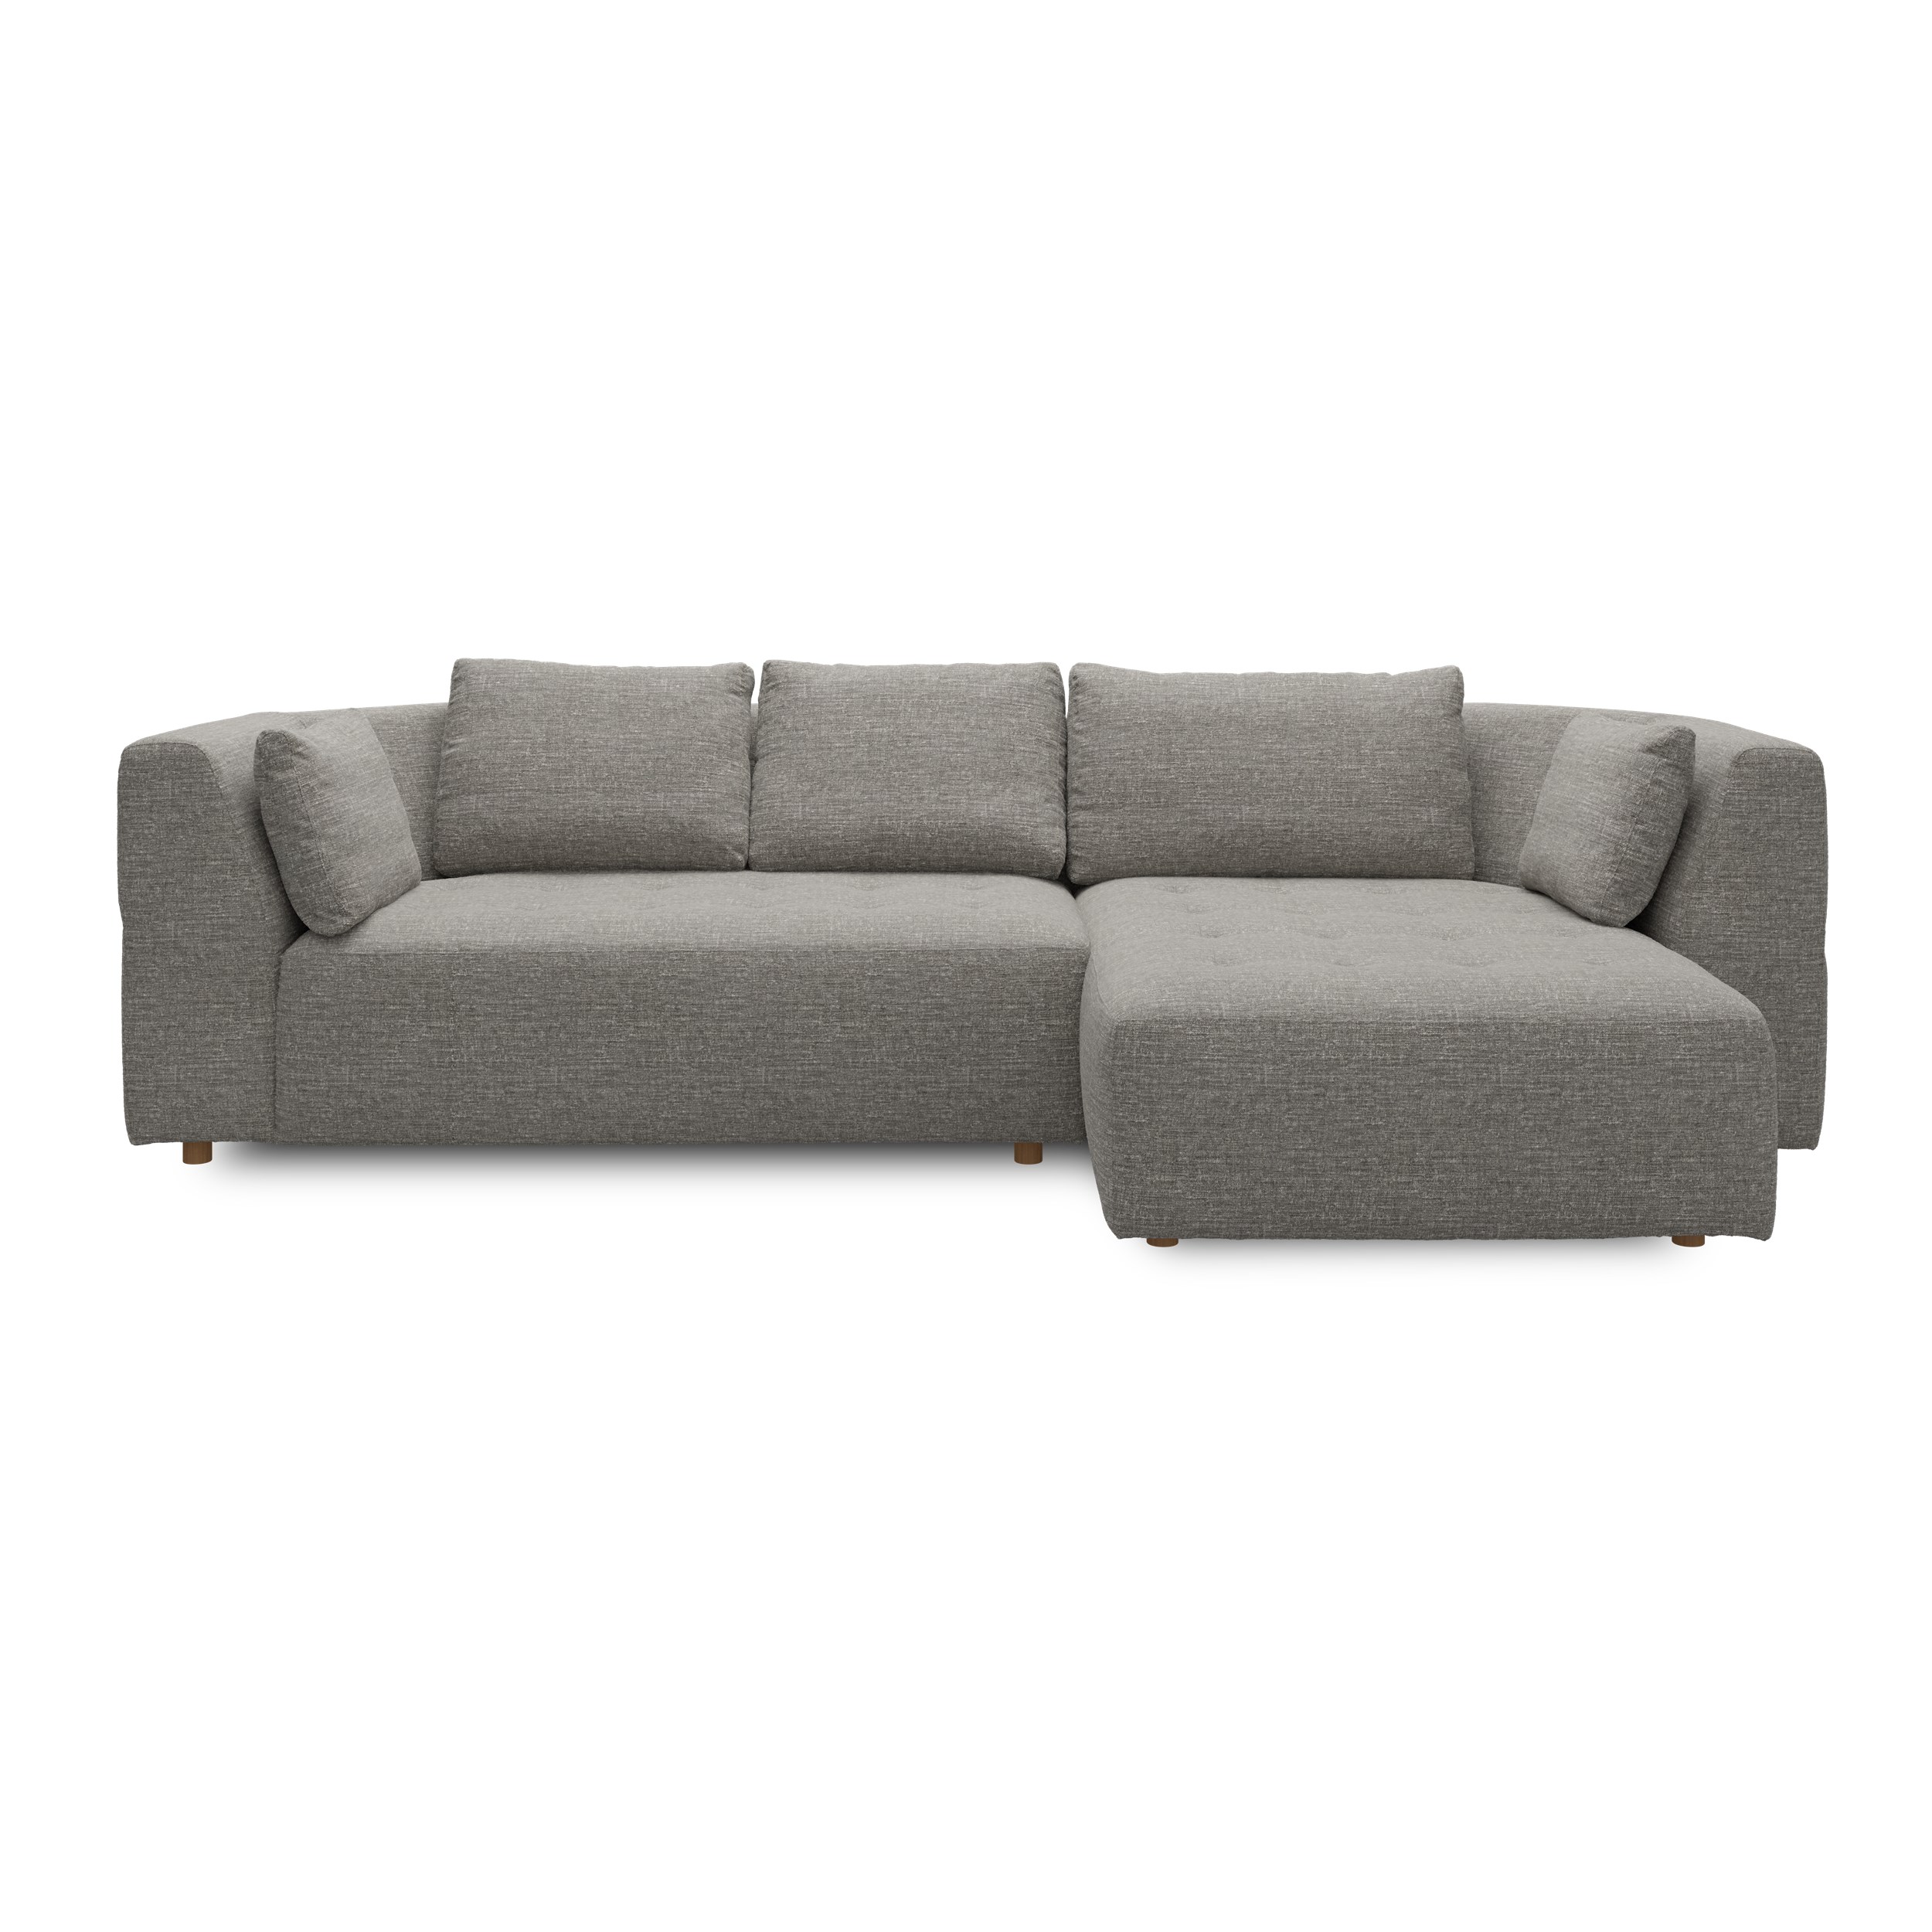 Walker högervänd soffa med schäslong - Caleido St. 11 grey-brown textil, ben no . 173 natur ek och S: Kallskum R: Dun/Silikon